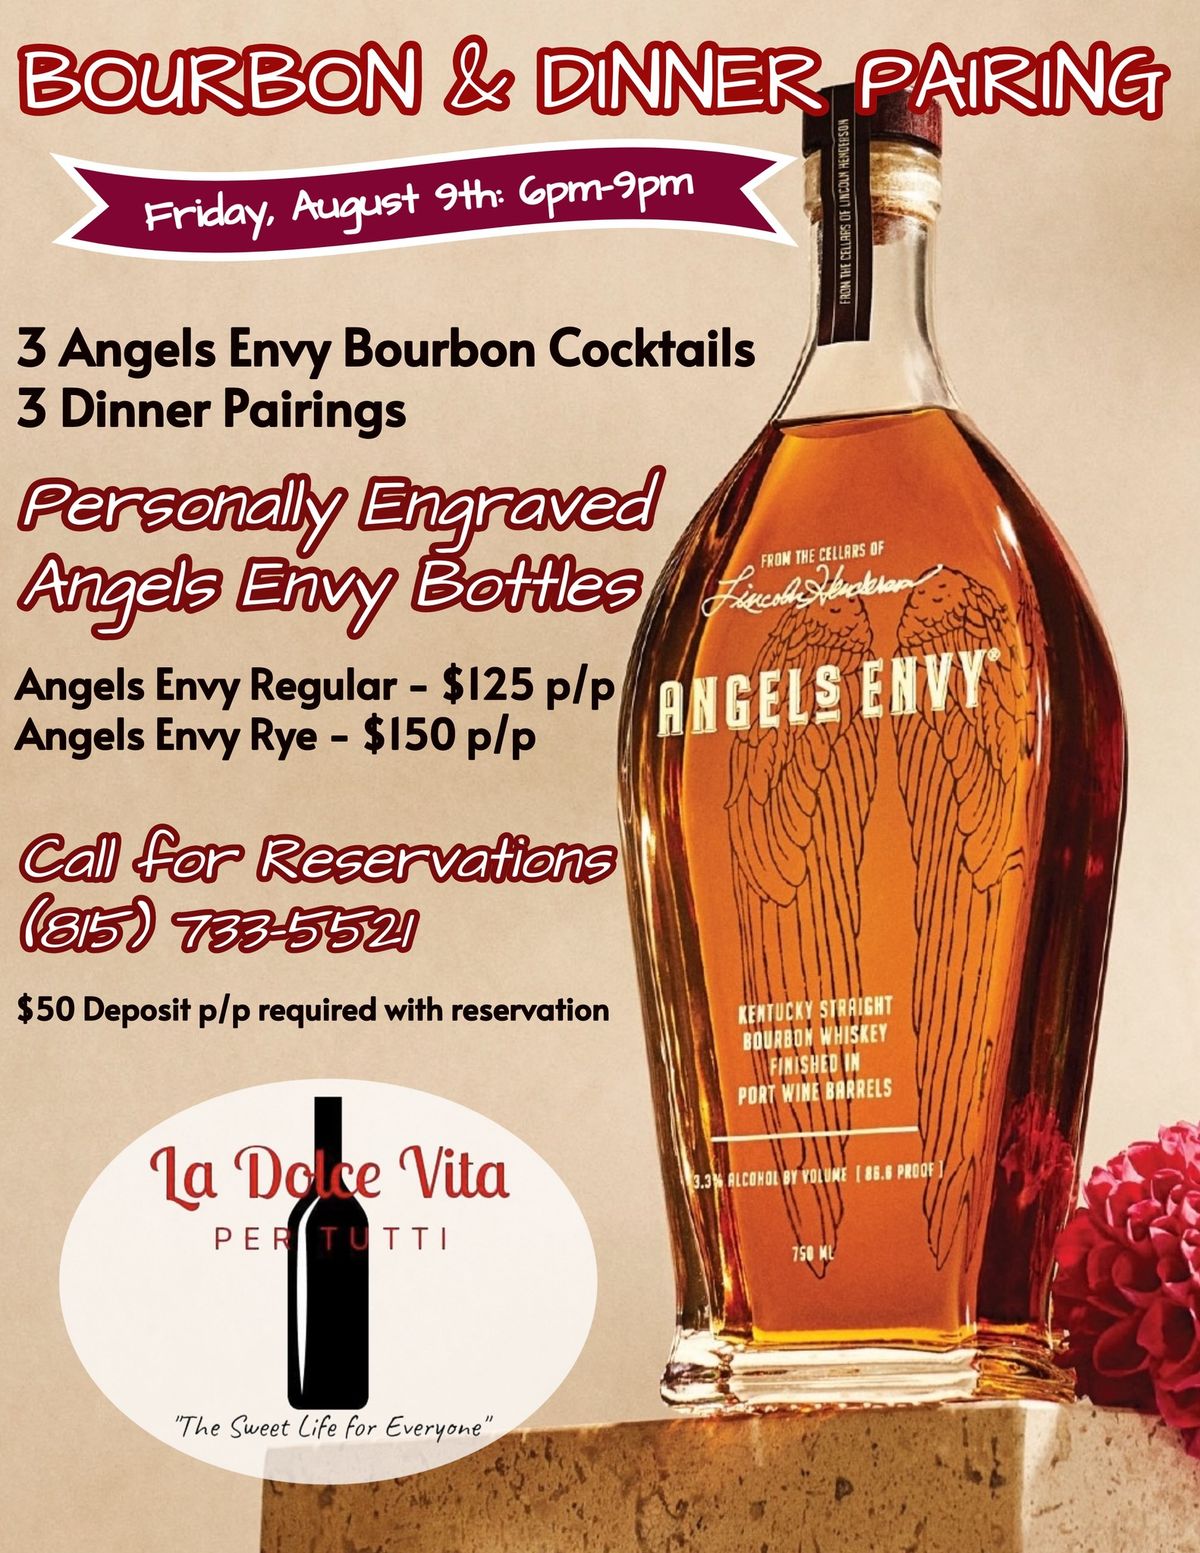 Angels Envy Bourbon & Dinner Pairing Night